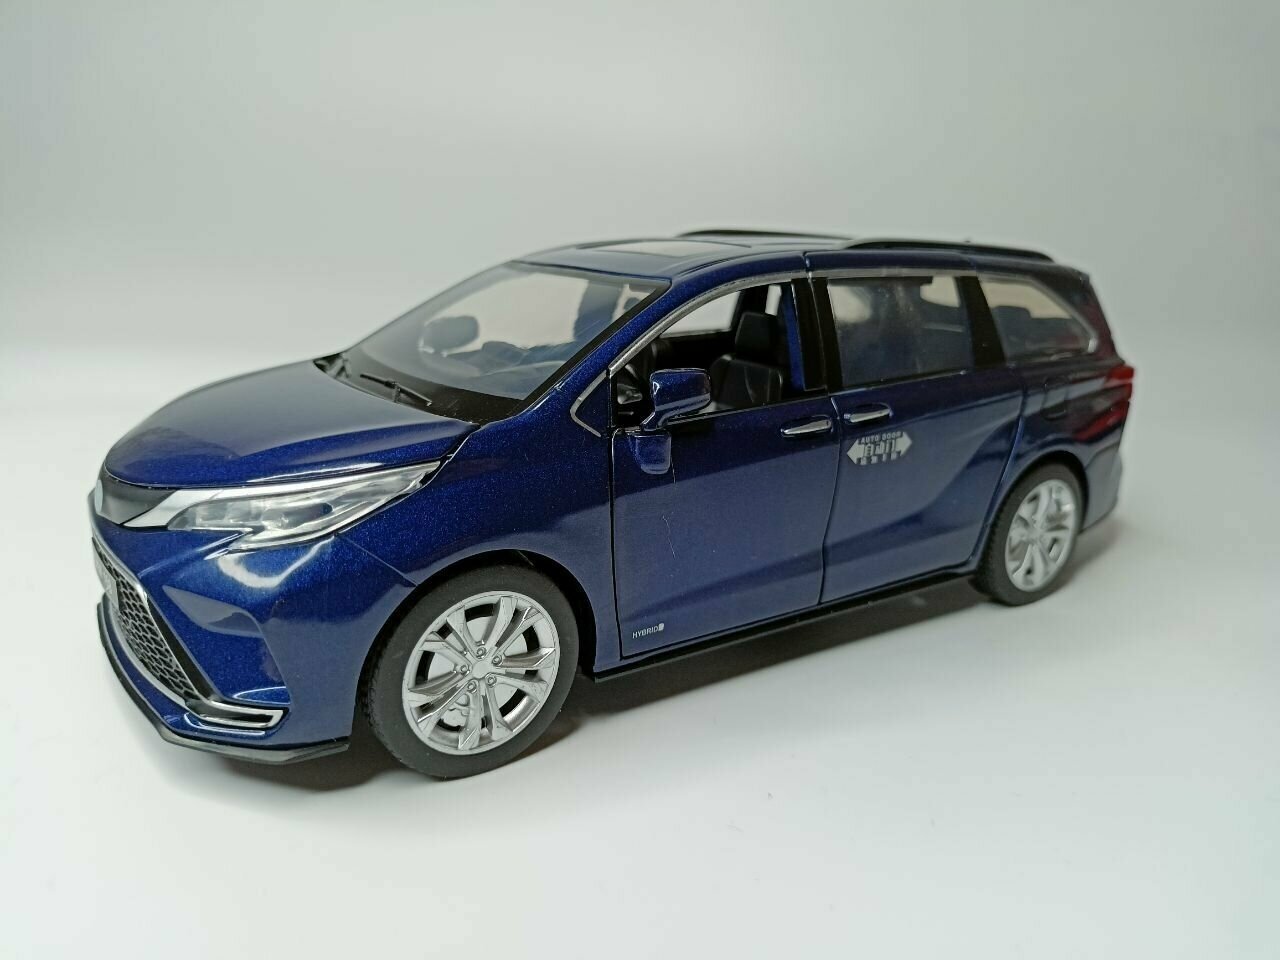 Модель автомобиля Toyota Sienna коллекционная металлическая игрушка масштаб 1:24 синий